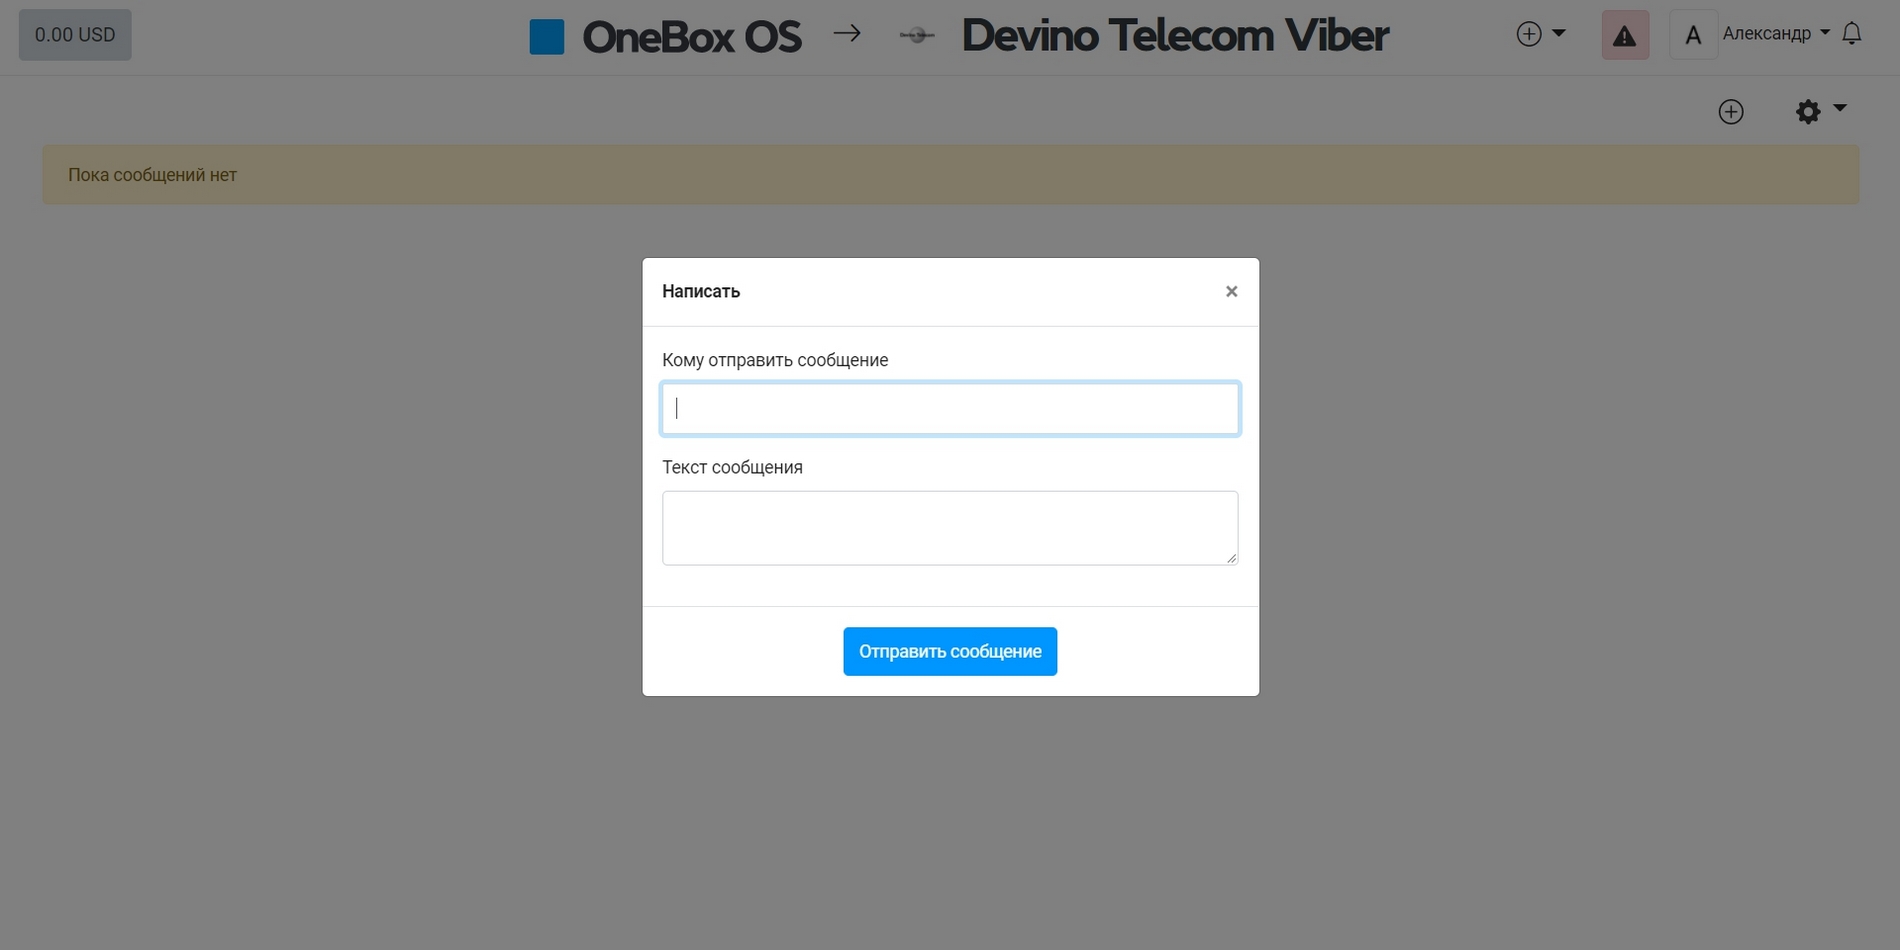 Application Devino Telecom Viber